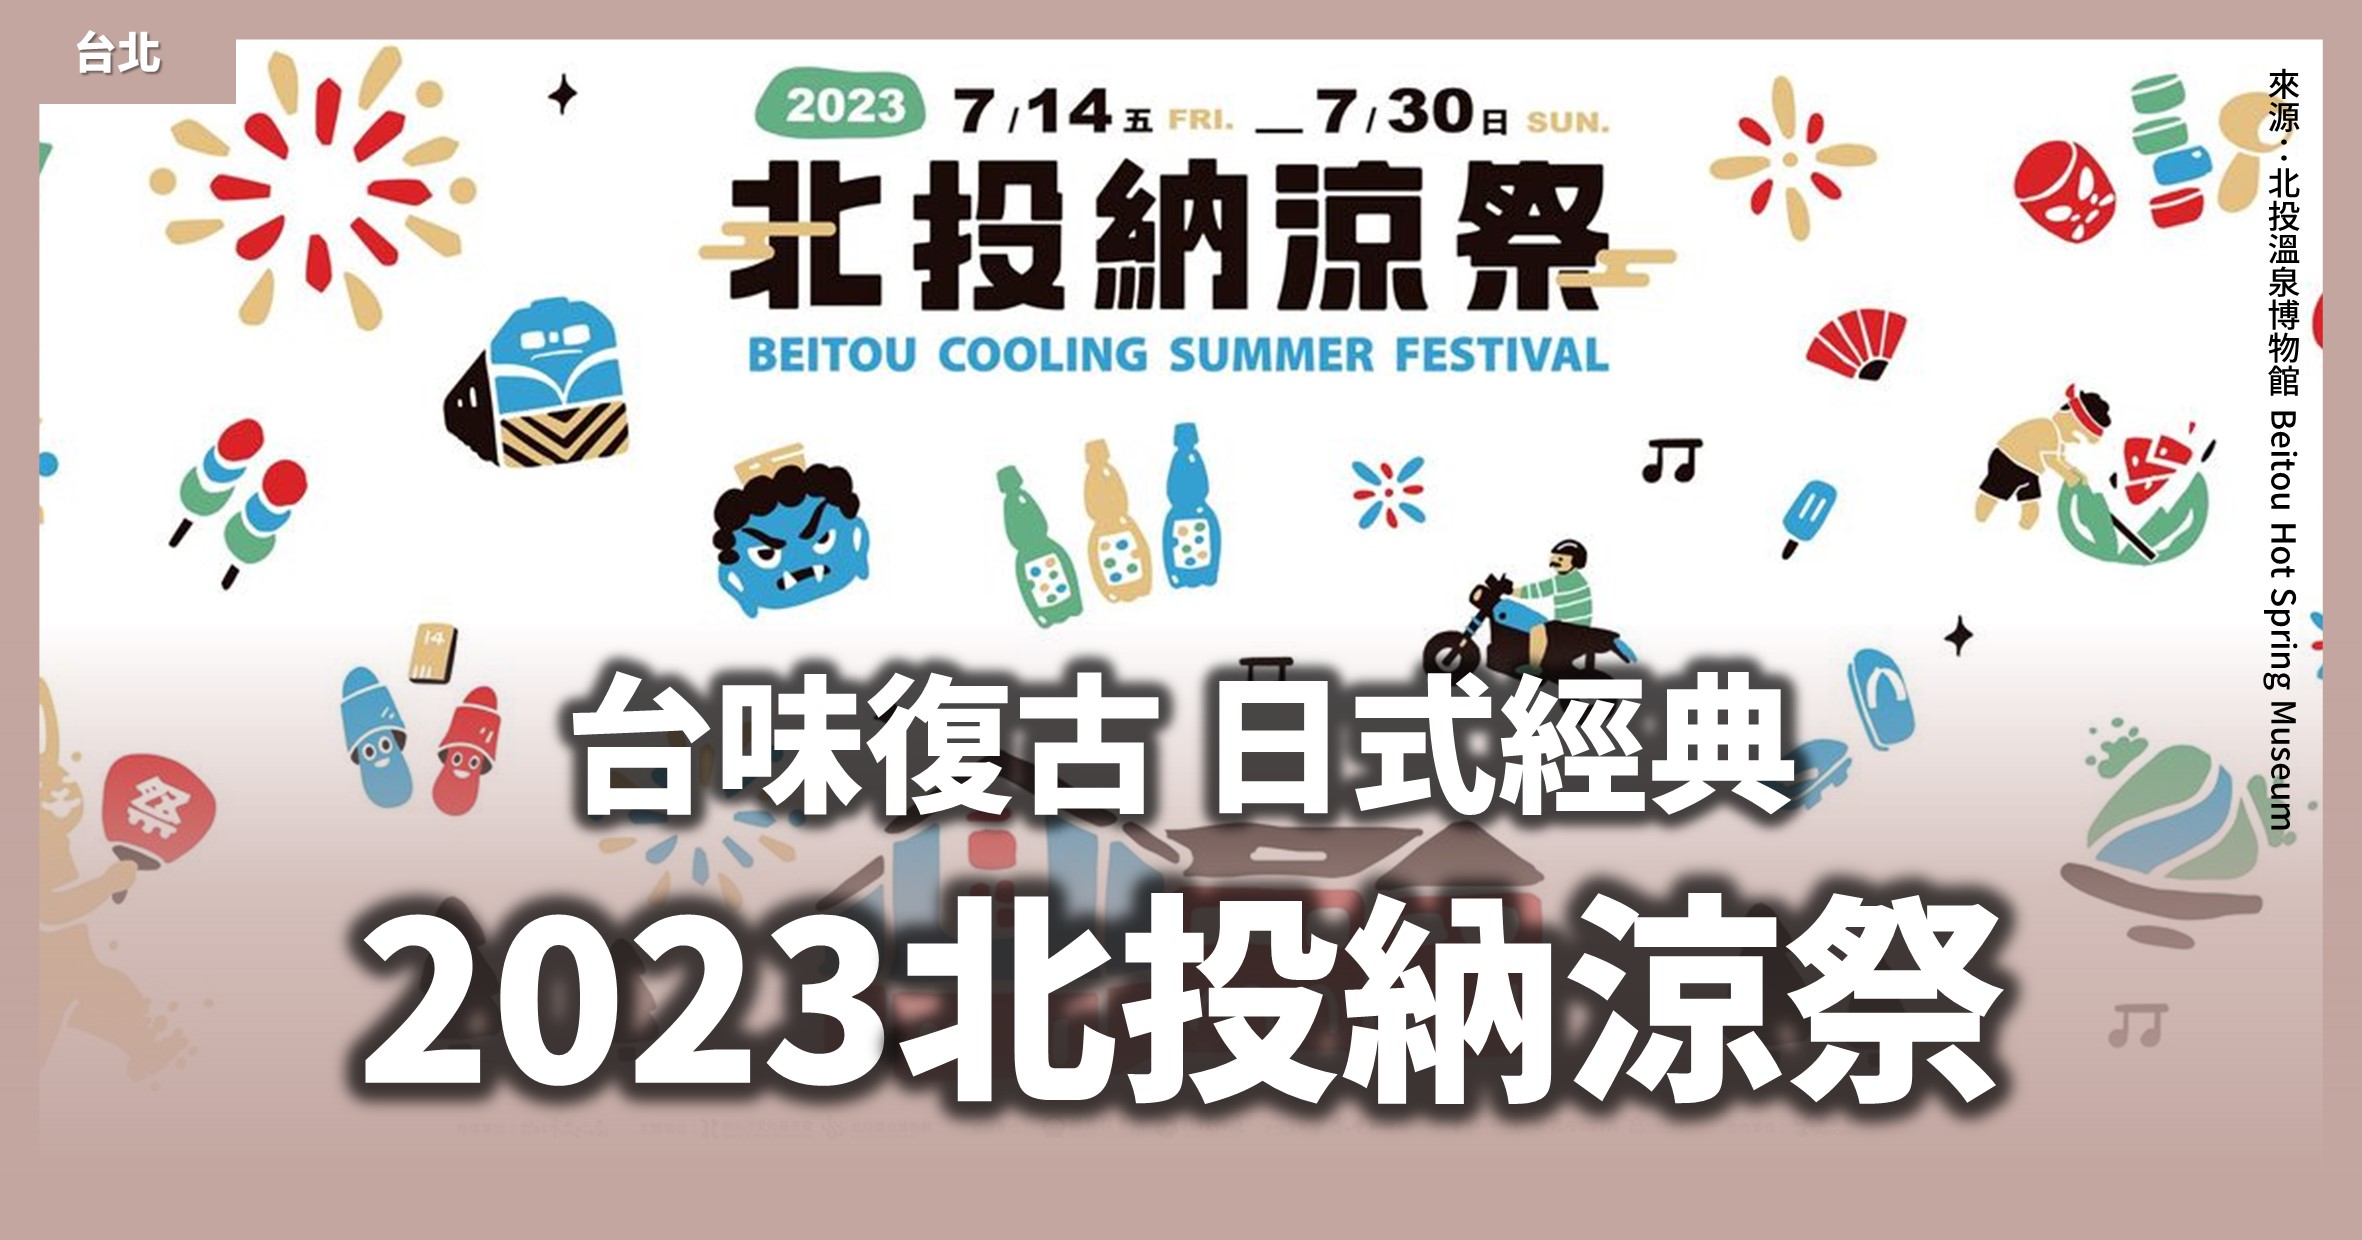 台北「2023北投納涼祭」為期17天的北投走讀、DIY活動、打西瓜比賽